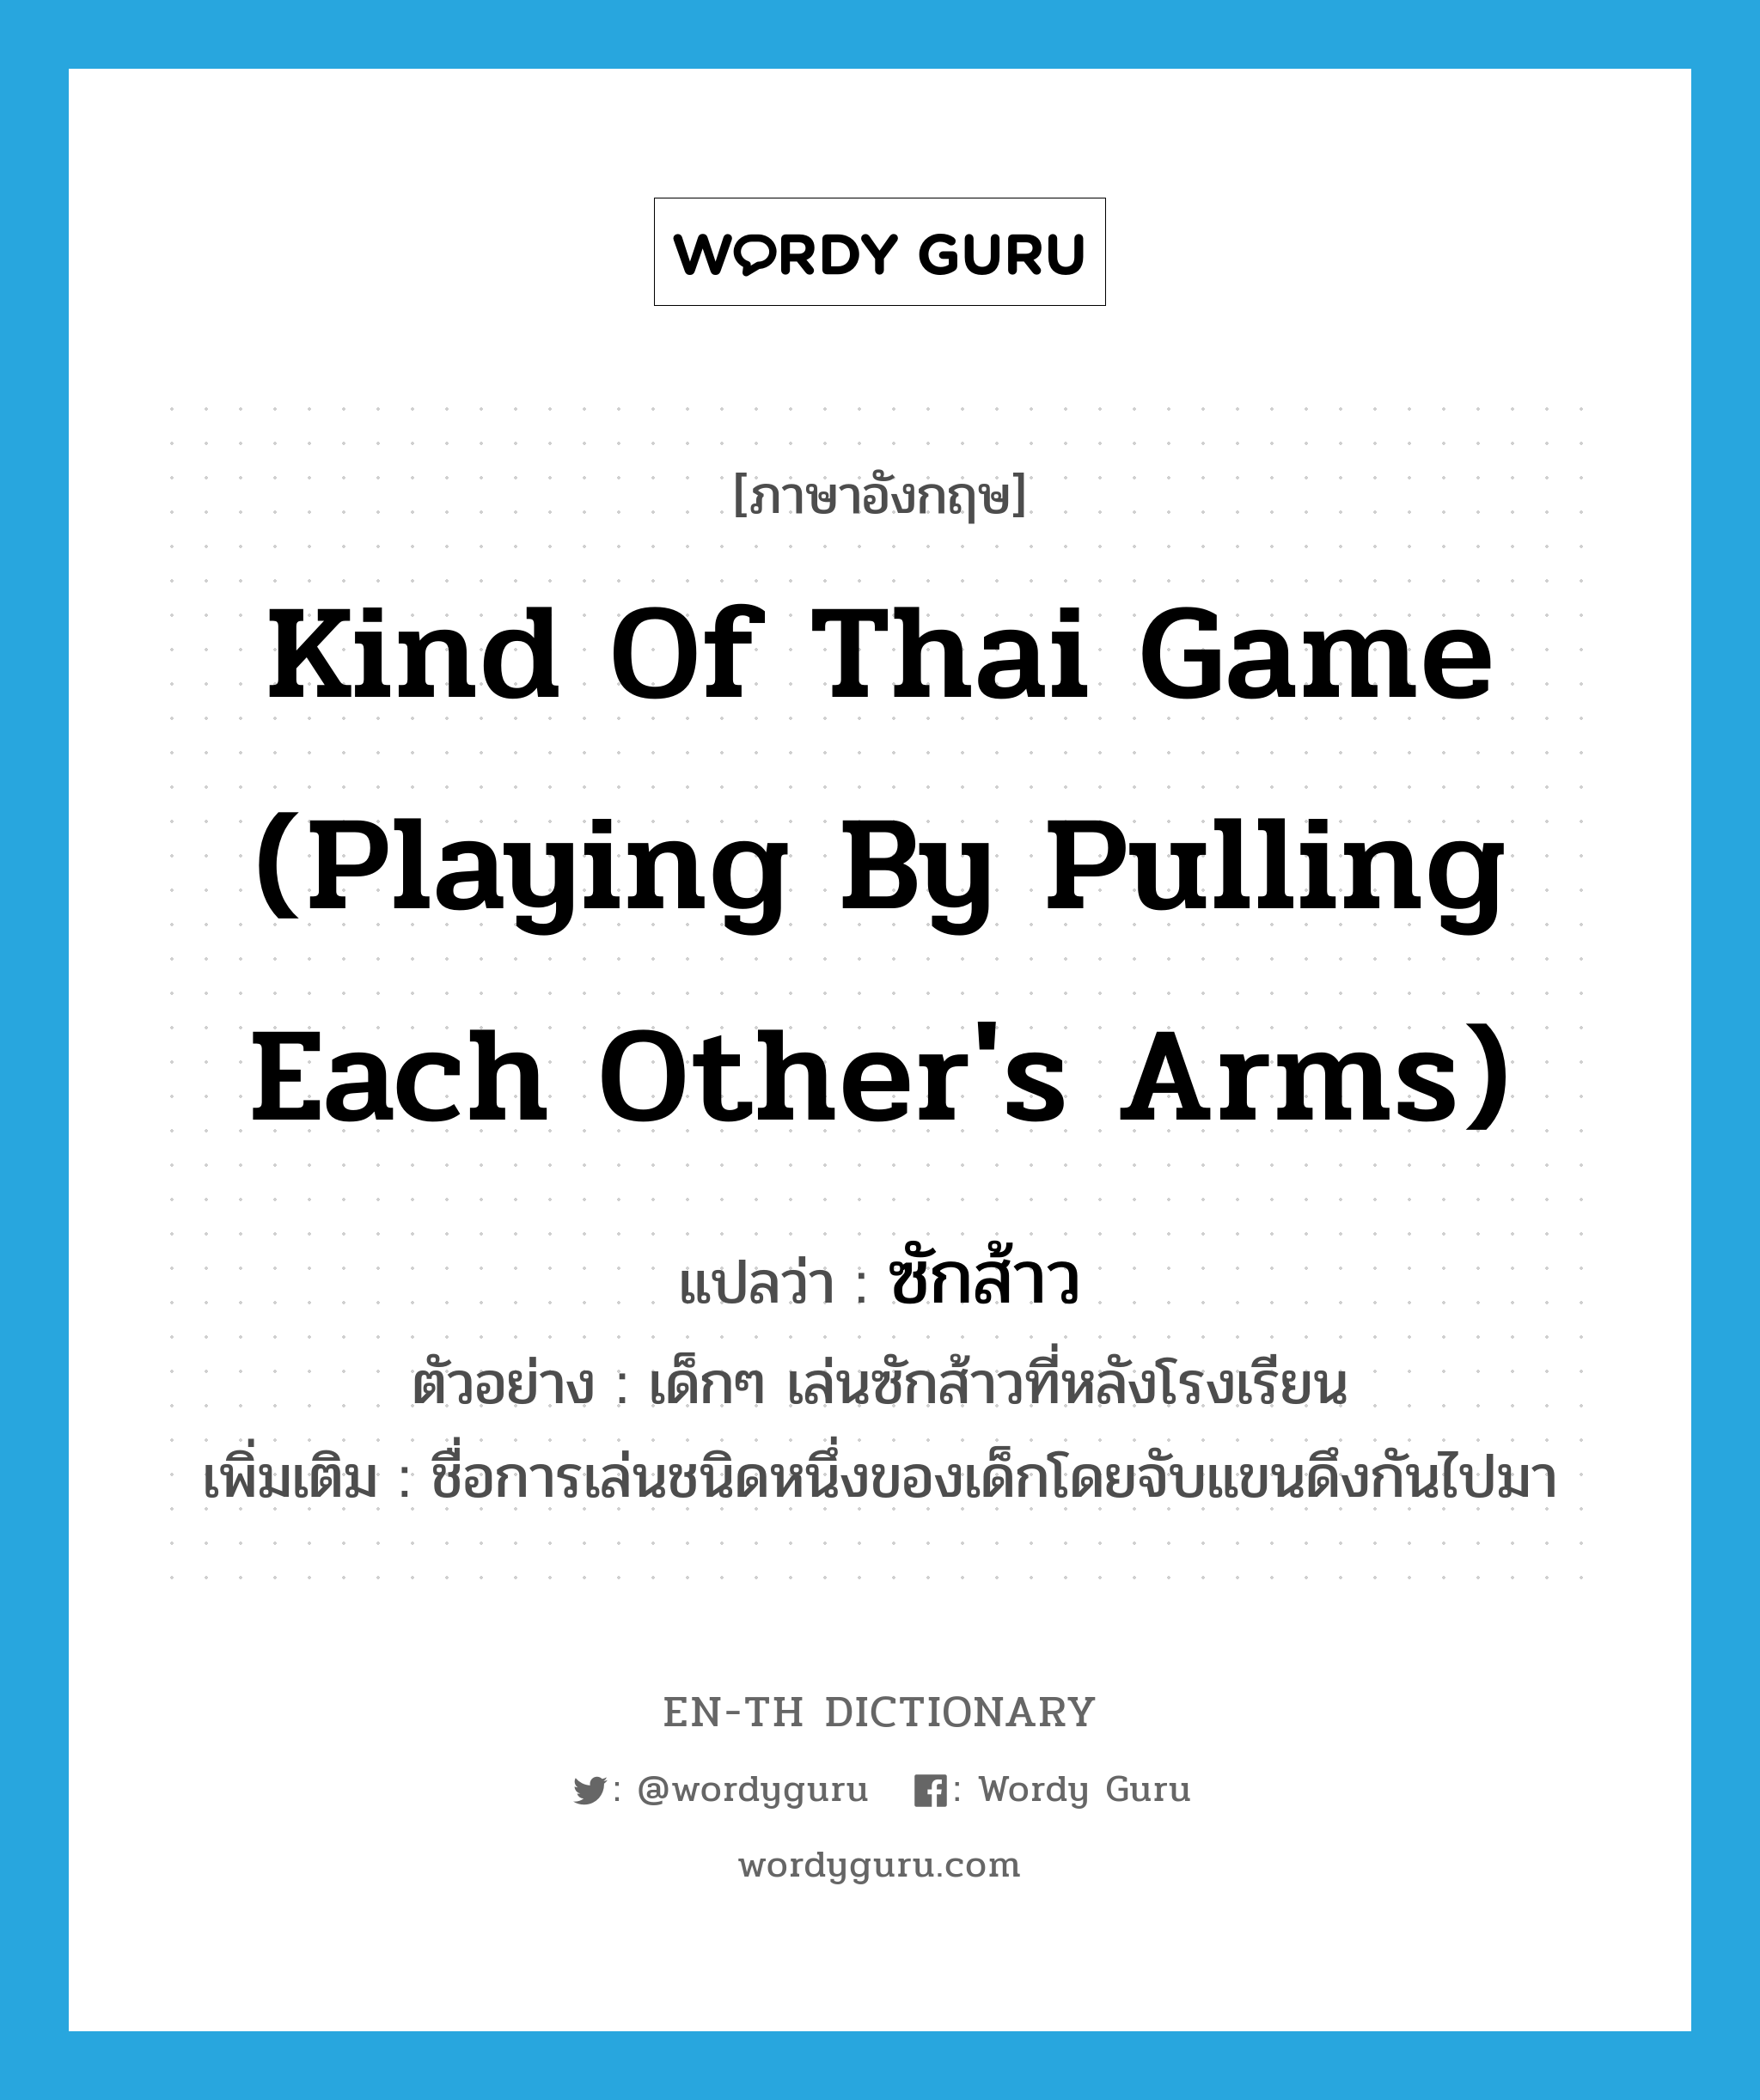 ซักส้าว ภาษาอังกฤษ?, คำศัพท์ภาษาอังกฤษ ซักส้าว แปลว่า kind of Thai game (playing by pulling each other's arms) ประเภท N ตัวอย่าง เด็กๆ เล่นซักส้าวที่หลังโรงเรียน เพิ่มเติม ชื่อการเล่นชนิดหนึ่งของเด็กโดยจับแขนดึงกันไปมา หมวด N